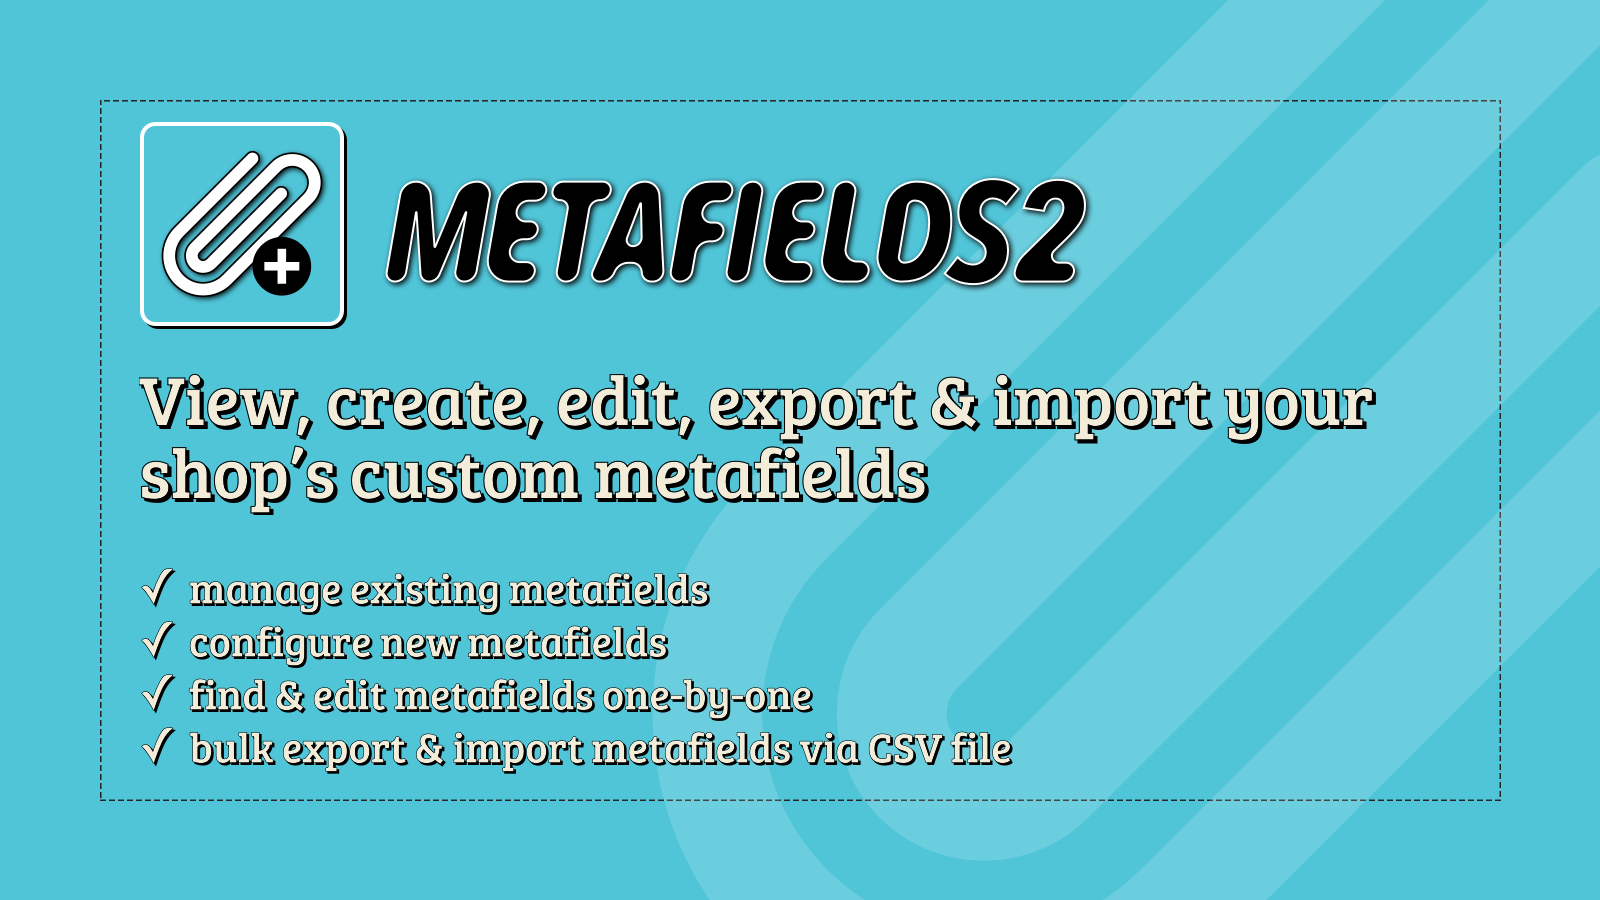 Metafields2 - Maak, bewerk, exporteer/importeer uw aangepaste metafields